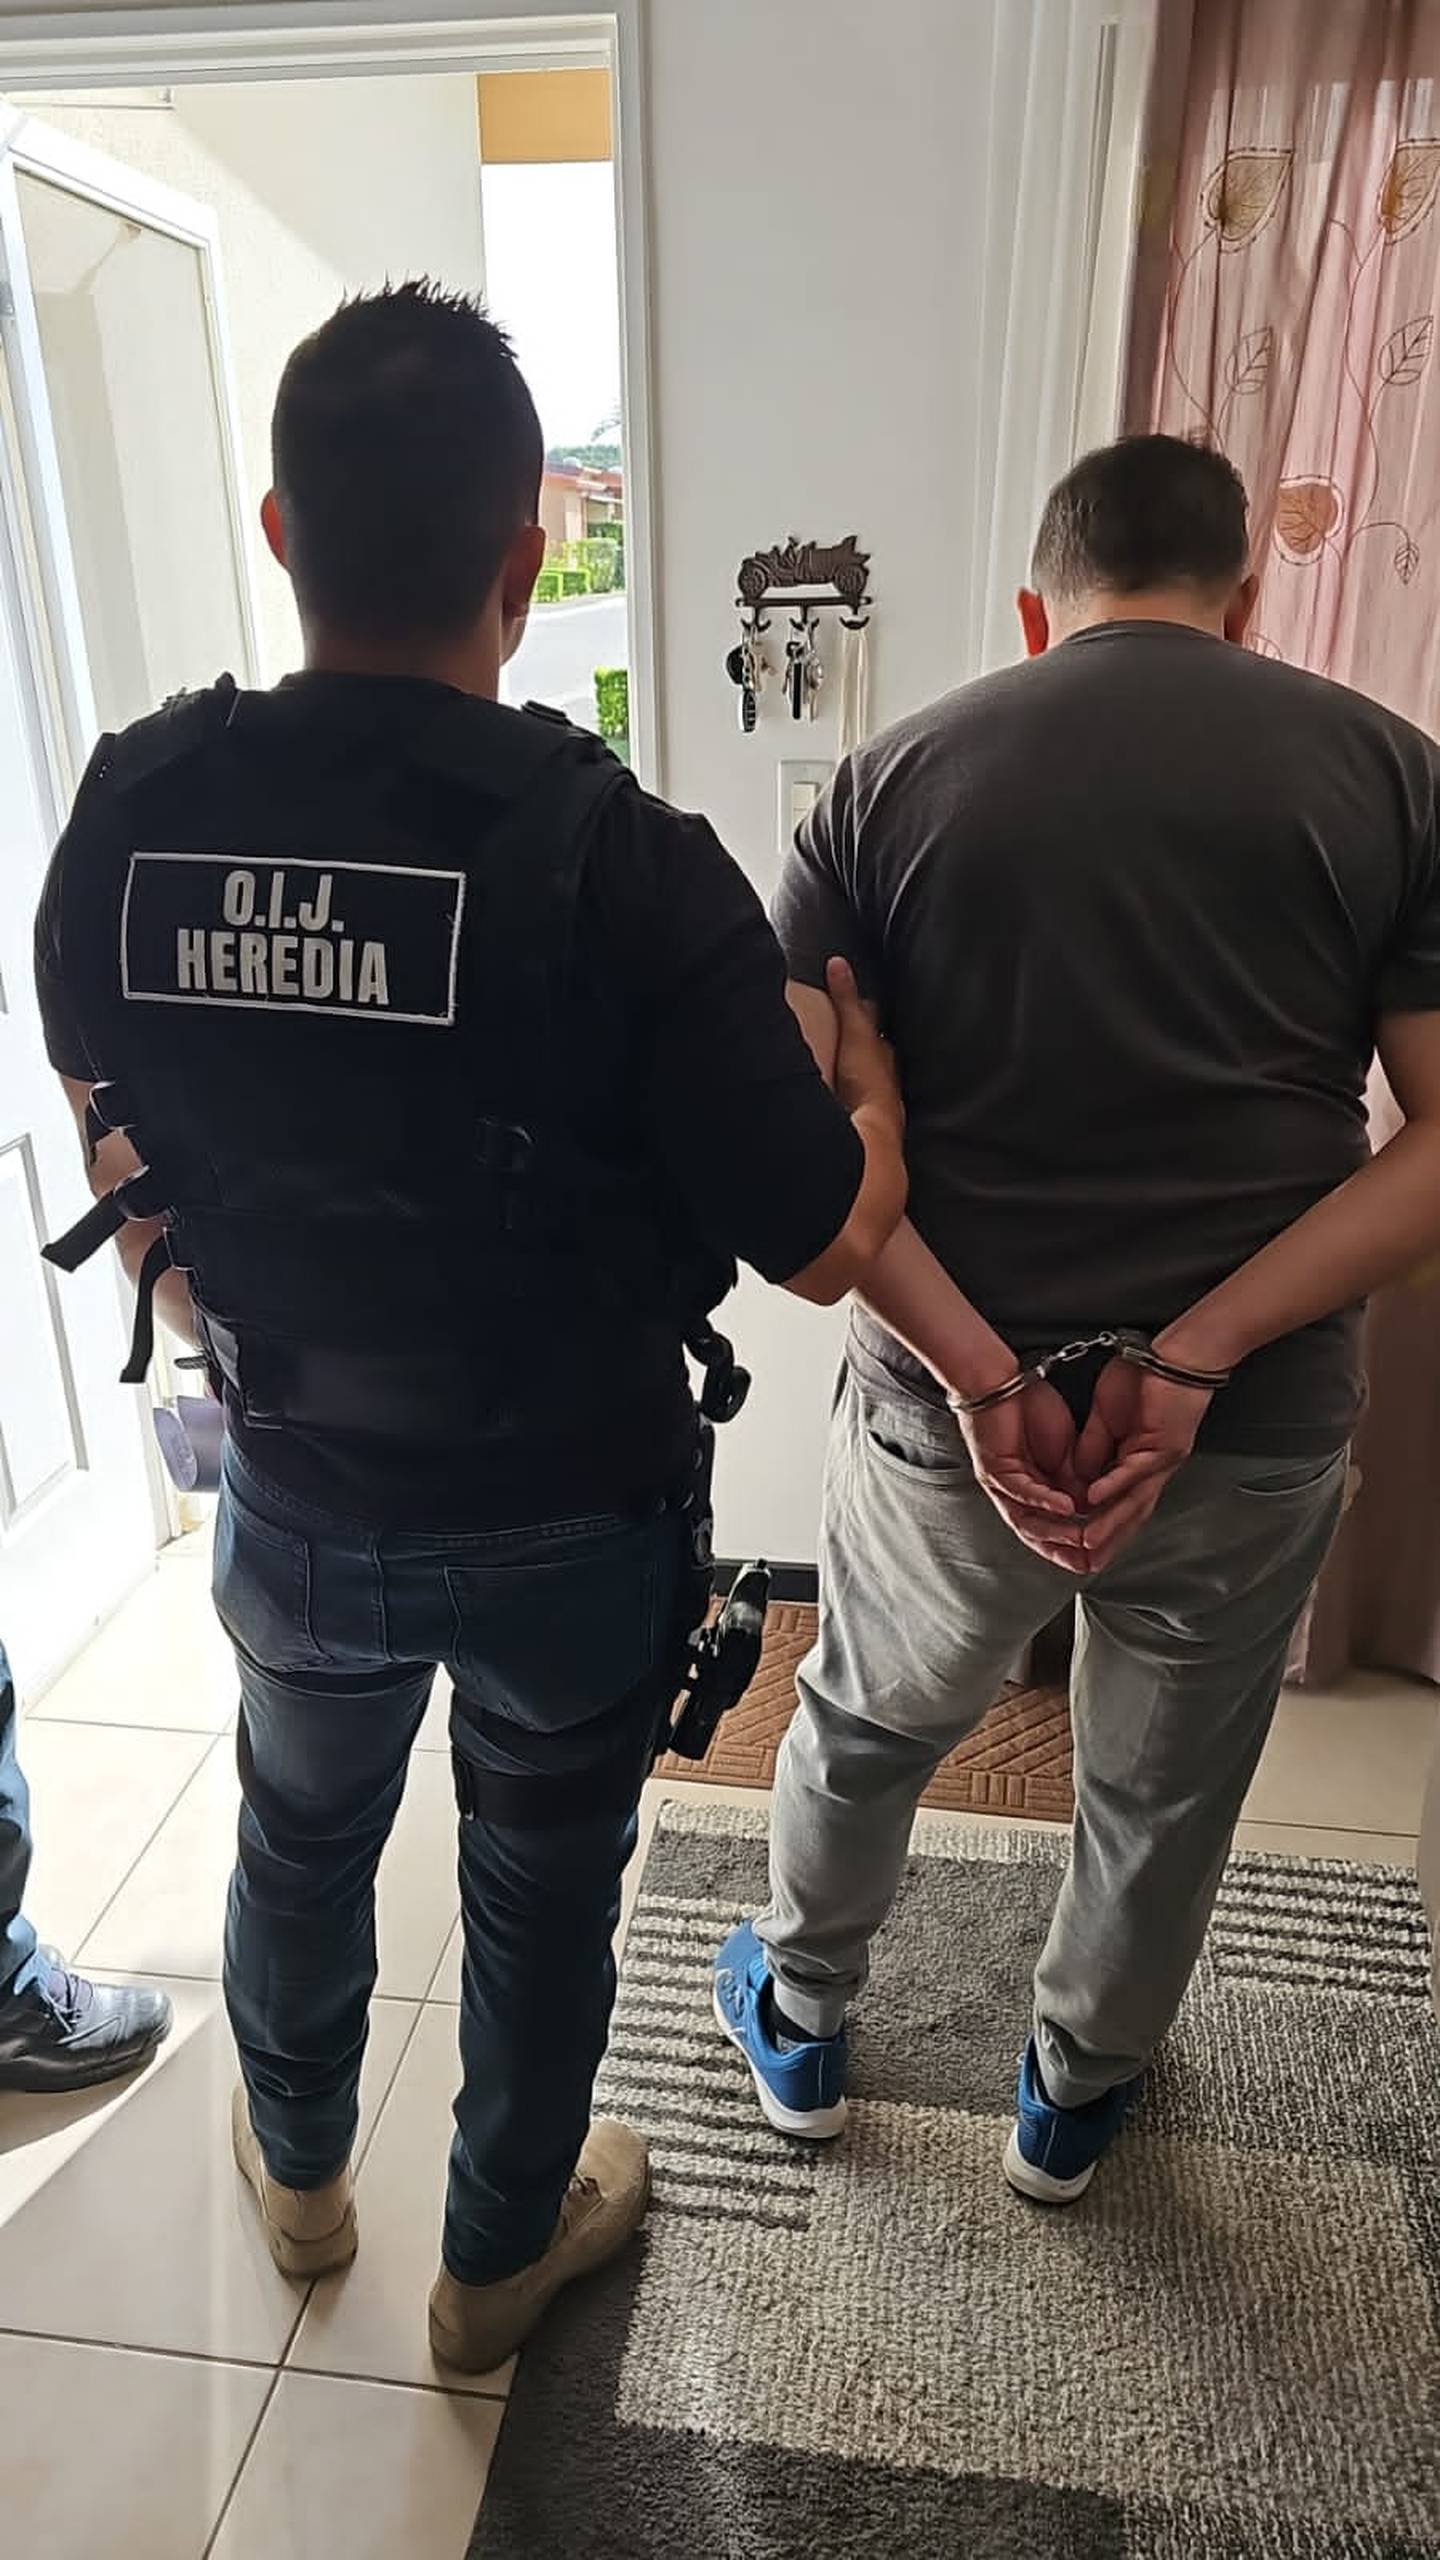 El educador, de 47 años, fue detenido en su casa en San Rafael de Alajuela y llevado a la Fiscalía. Foto: Cortesía OIJ.